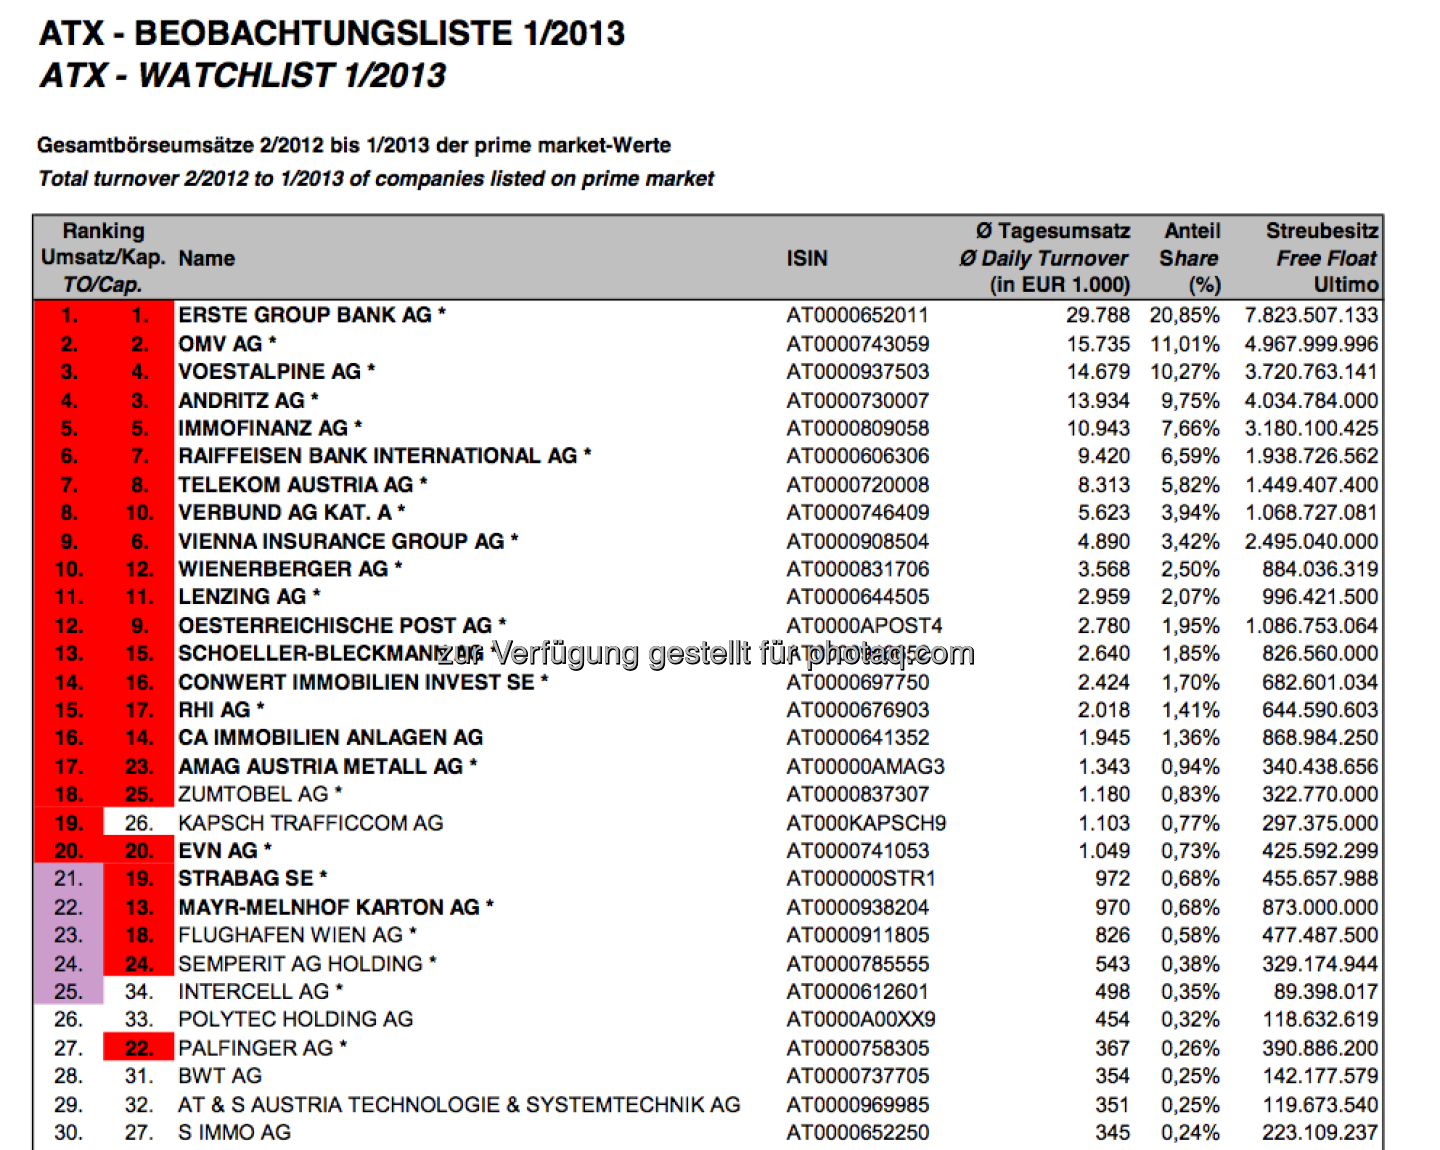 ATX-Beobachtungliste Jänner 2013 (c) Wiener Börse, siehe http://www.christian-drastil.com/2013/02/05/atx-neu-zumtobel-mit-guten-karten-mayr-und-jetzt-auch-strabag-im-abstiegsrennen/